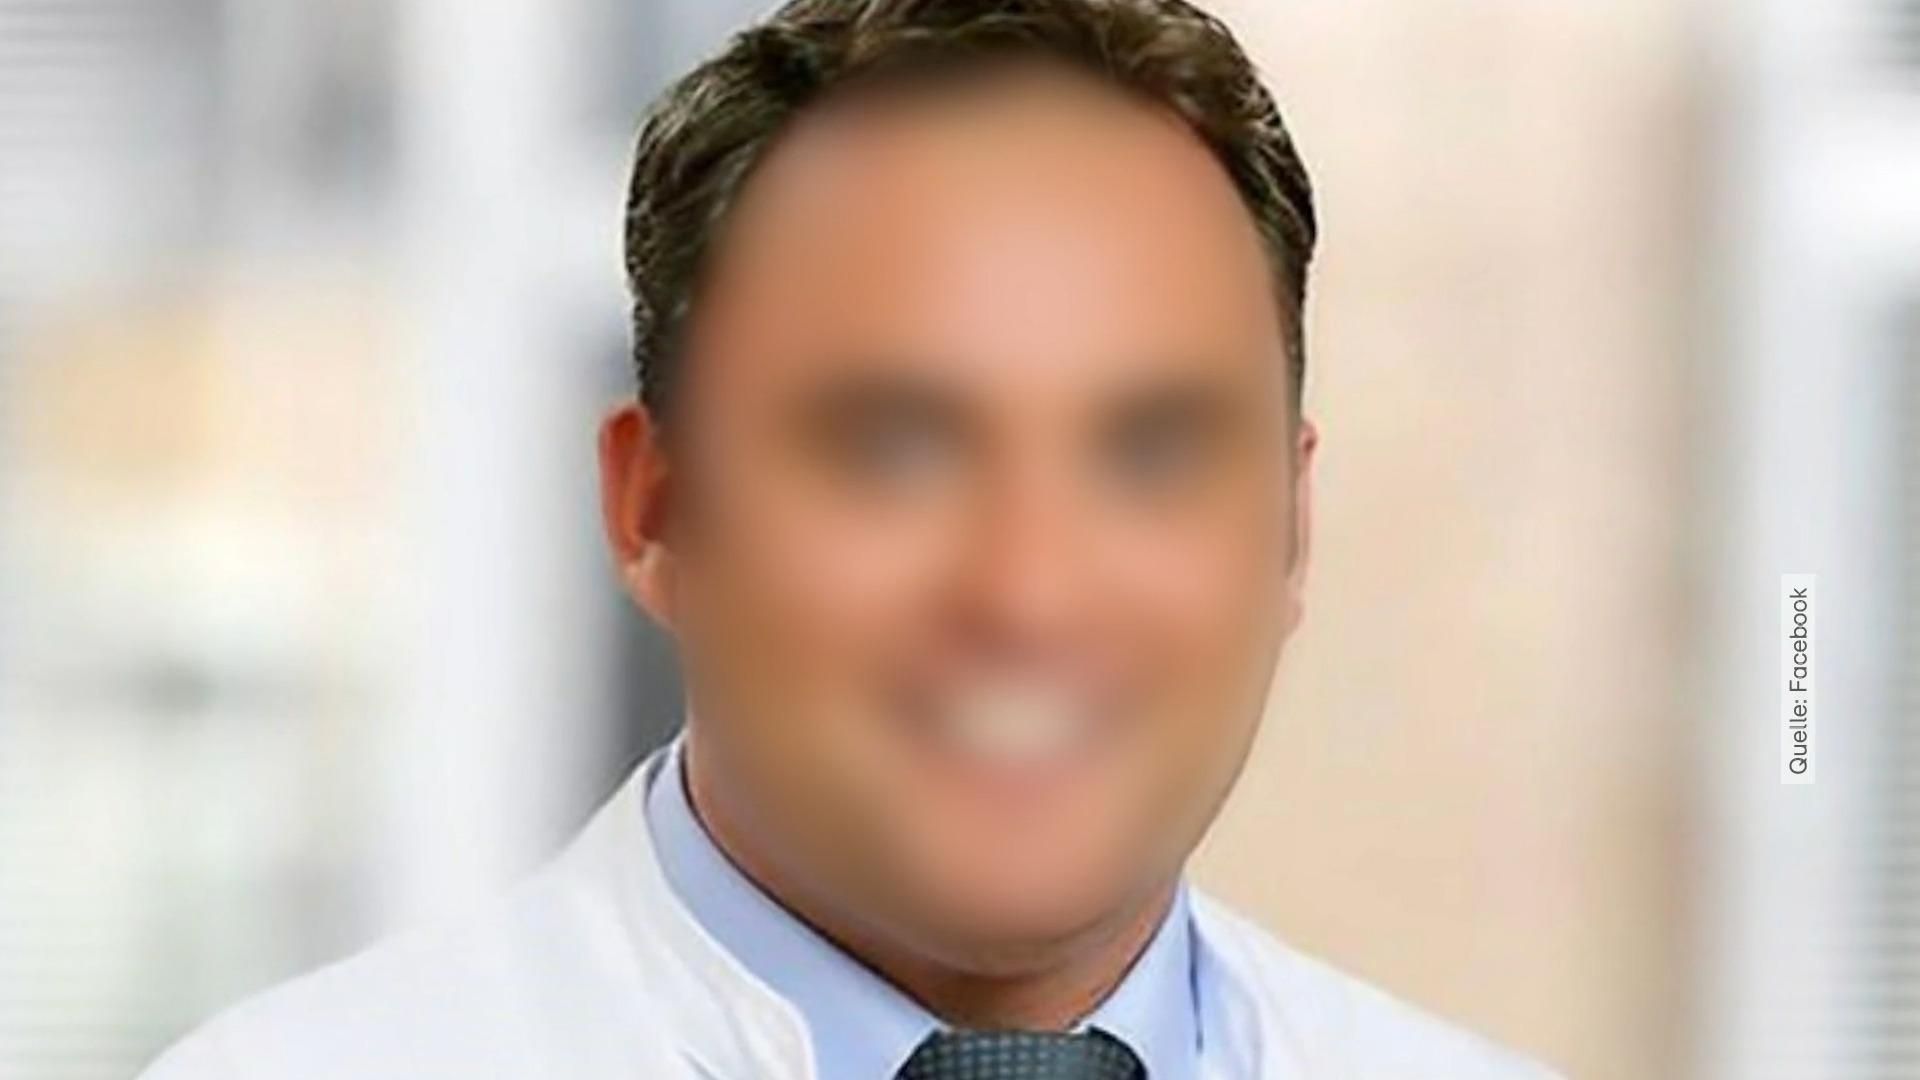 Koks-Penis-Arzt erneut verurteilt Weitere Verurteilung nach Tod der Geliebten